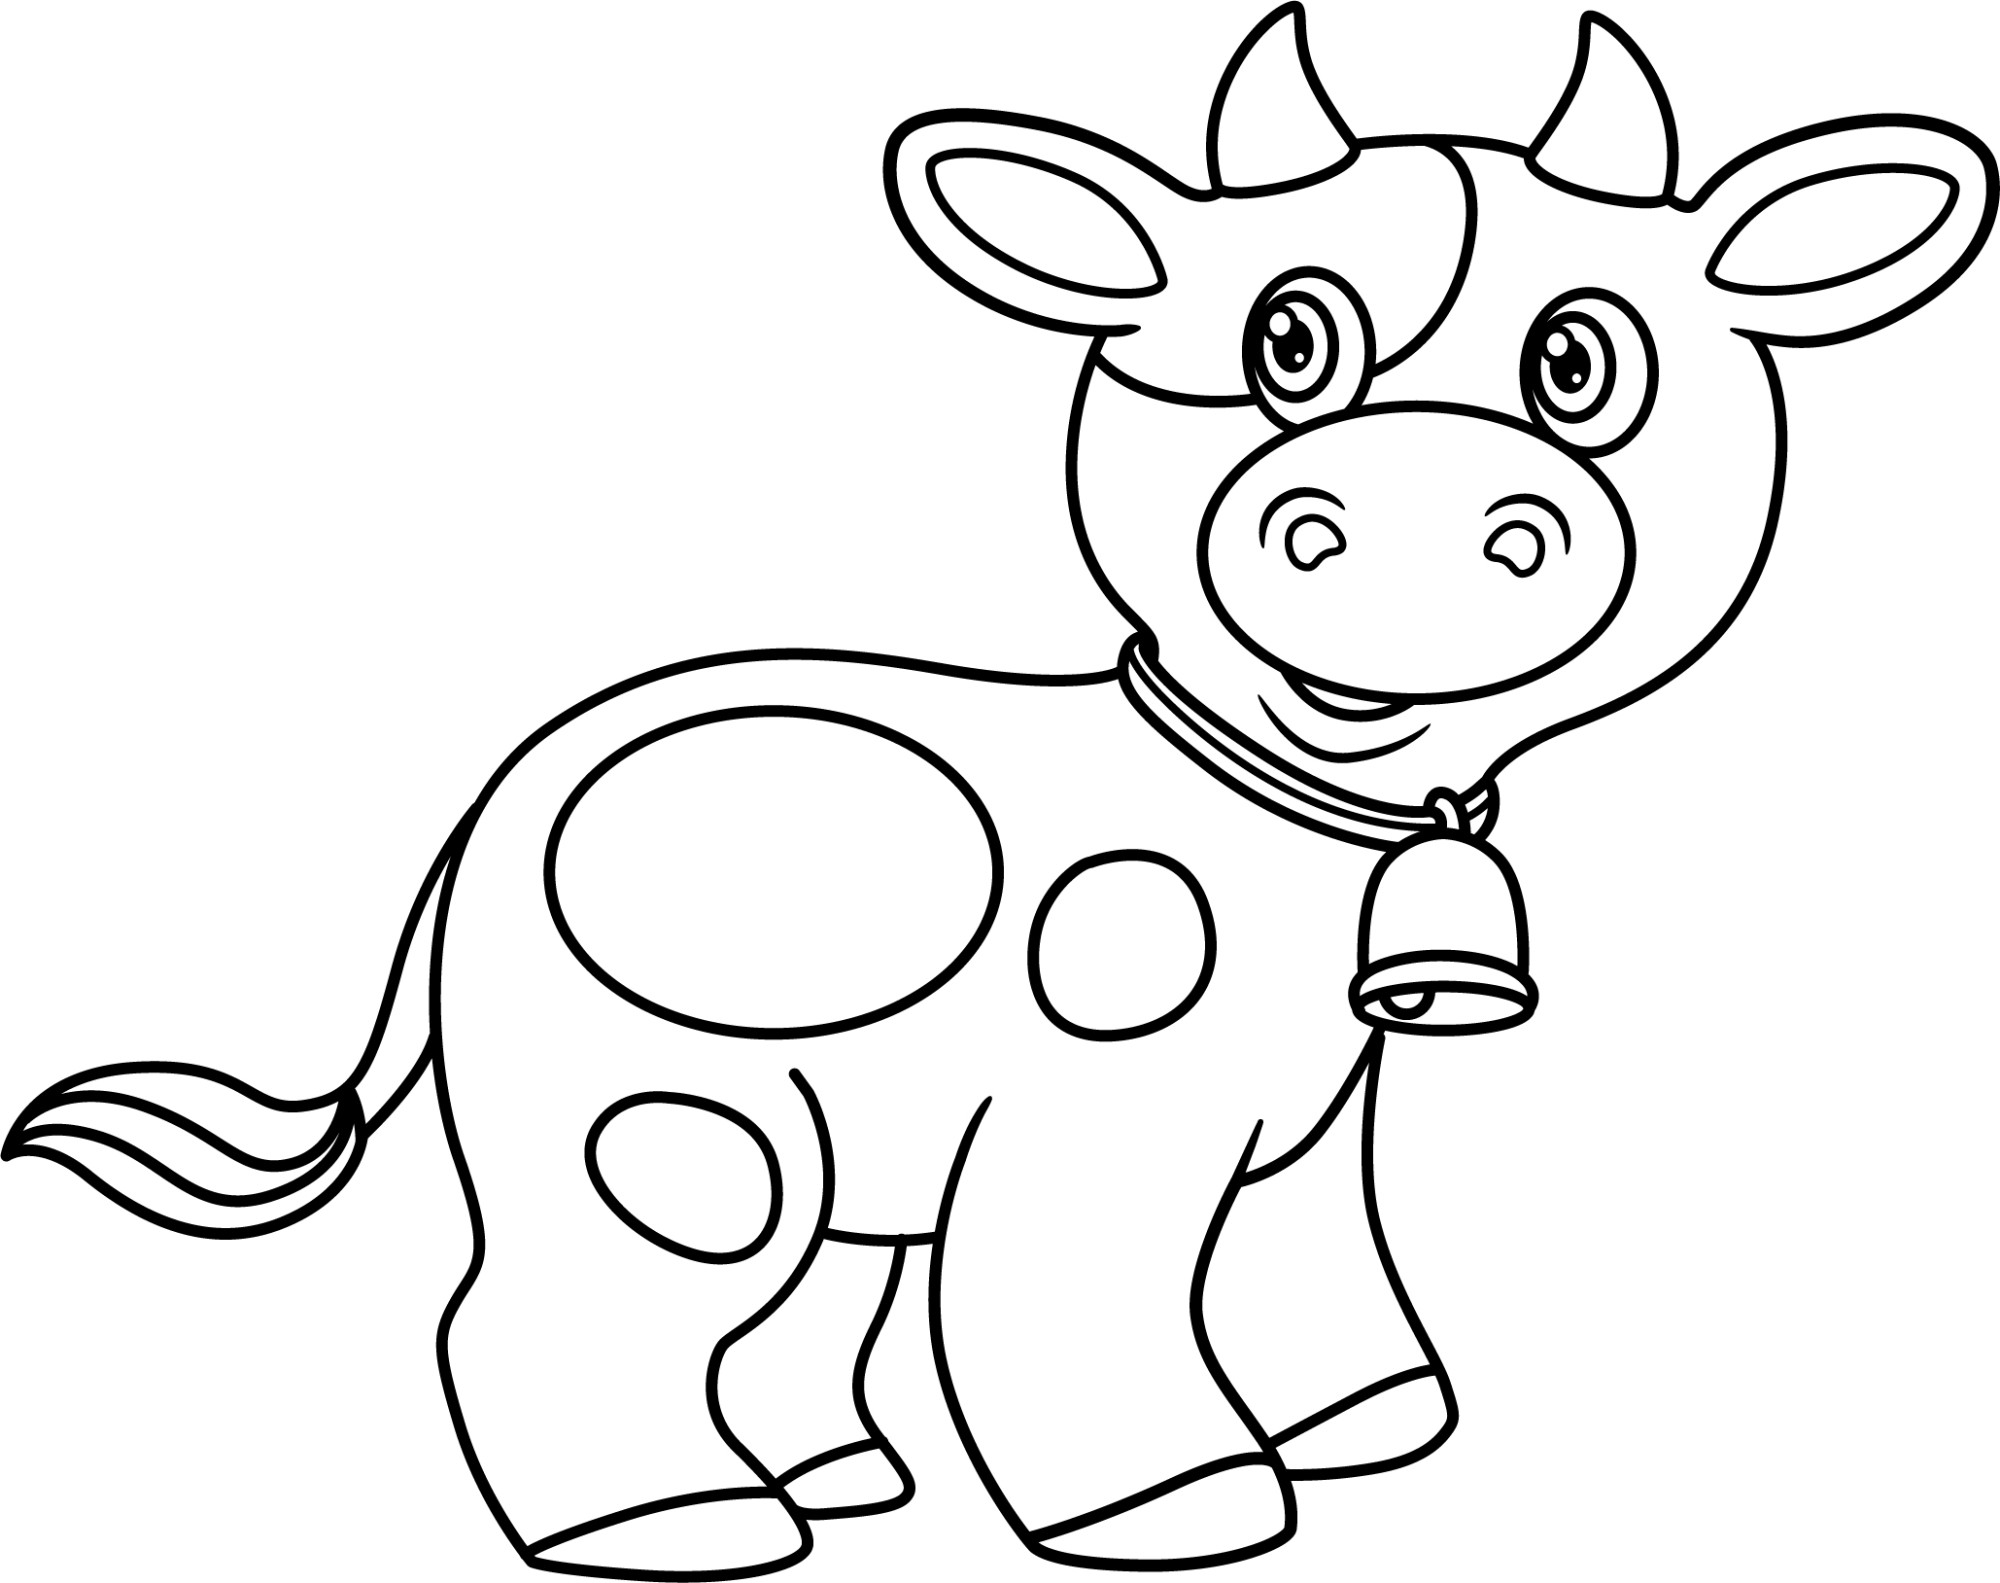 Раскраска для детей: симпатичная мультяшная корова с колокольчиком